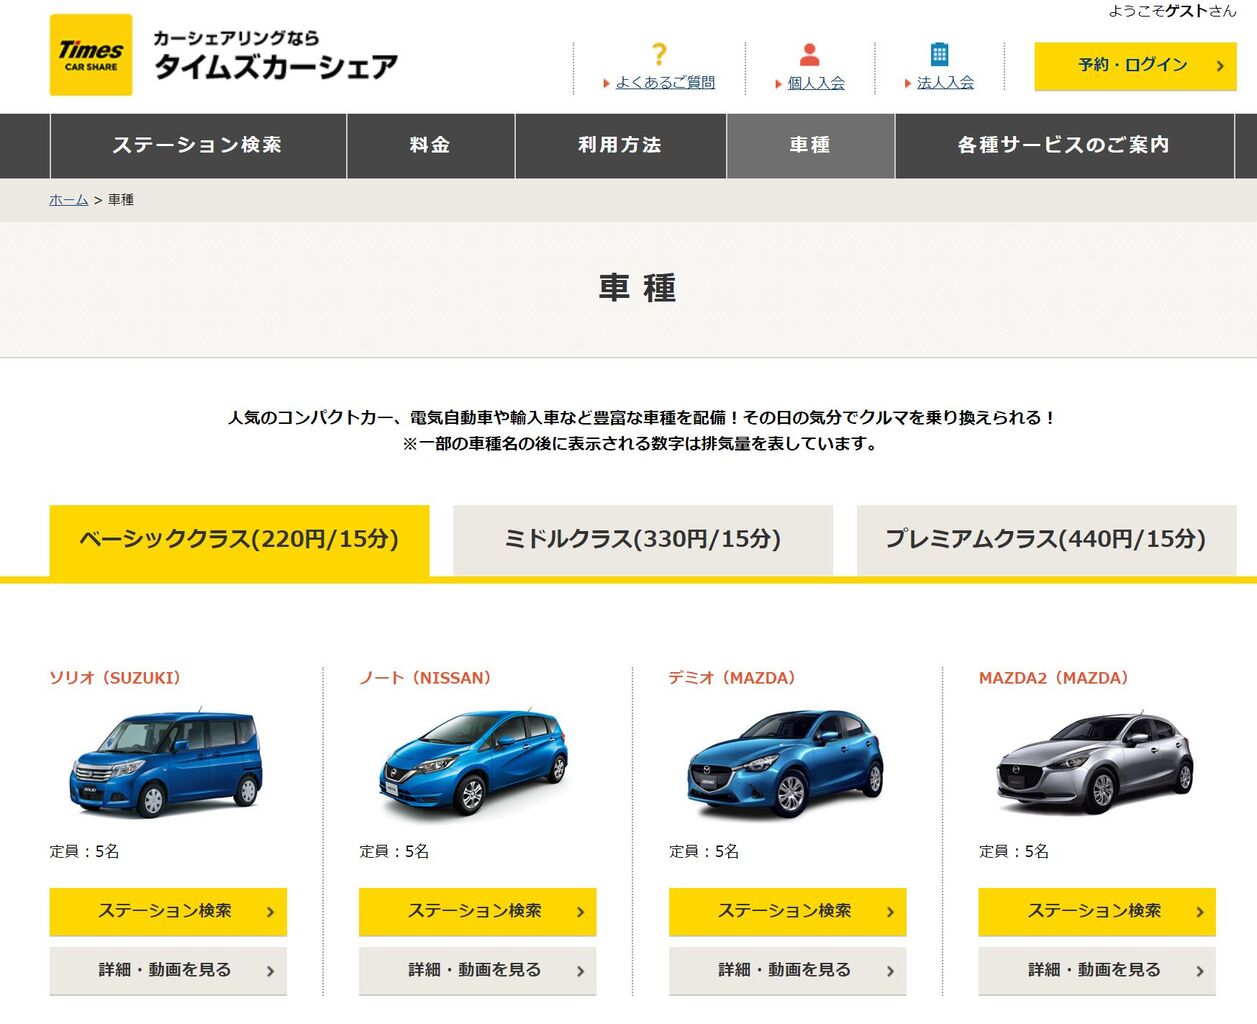 タイムズカーシェアで Mazda2 がラインナップされる K Blog Next